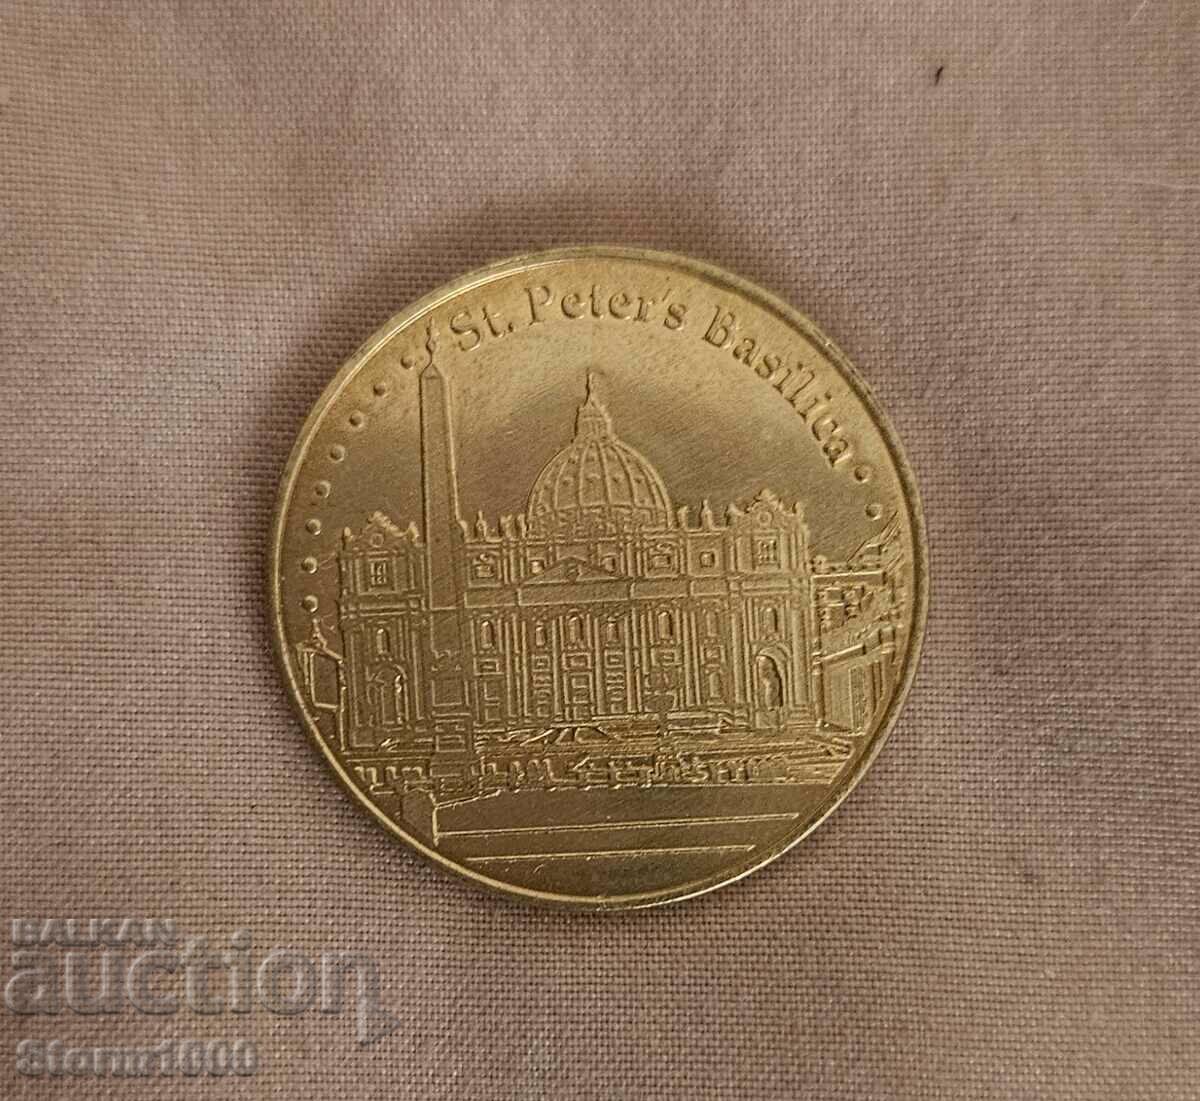 Vatican Coin / Token - very rare Excellent condition